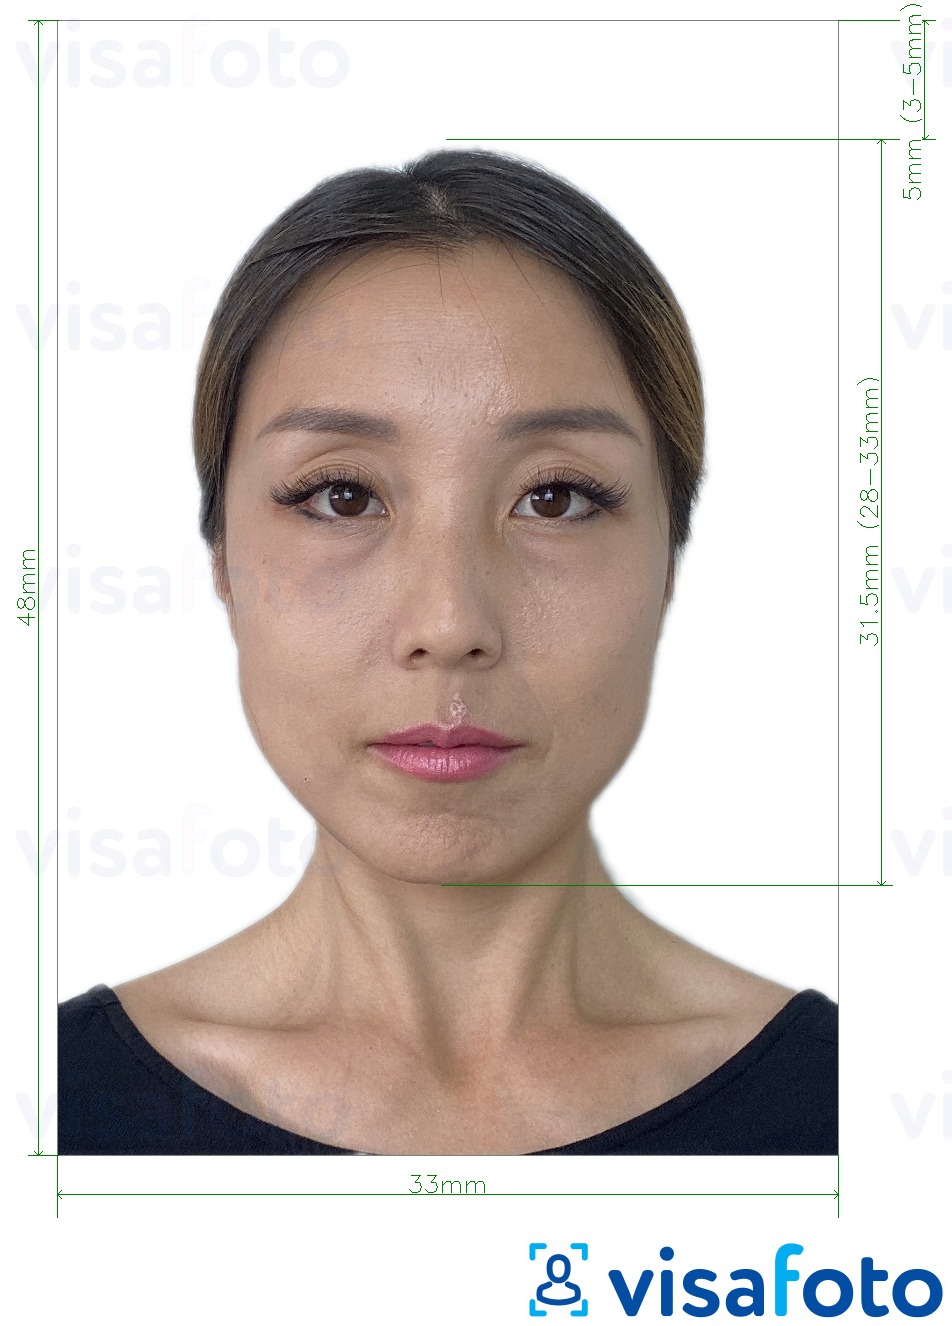 Voorbeeld van foto voor China Paspoort 33x48 mm met exacte maatspecificatie